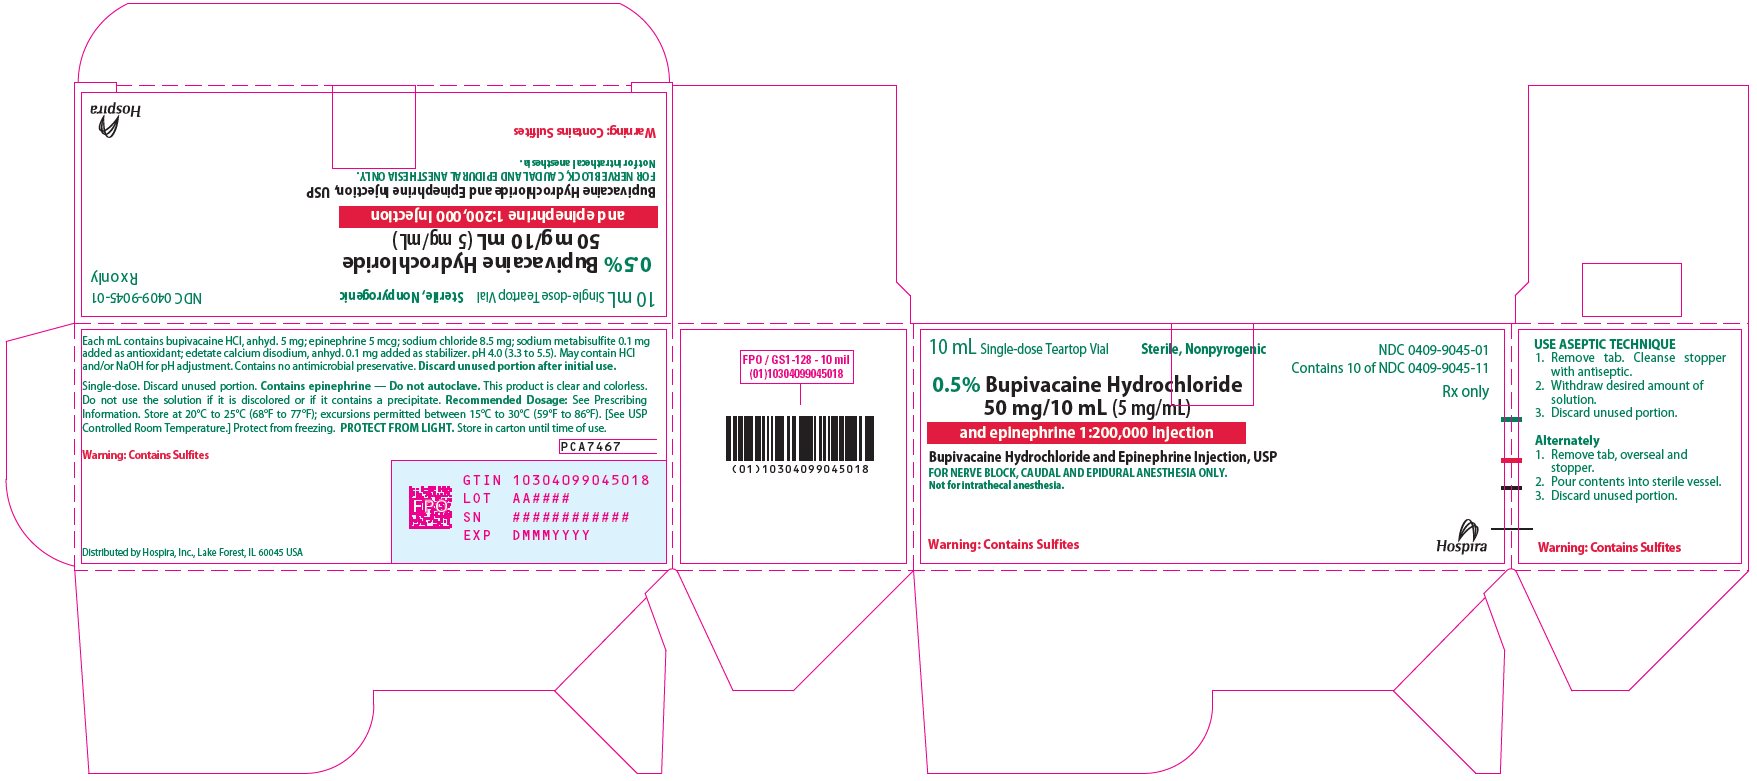 PRINCIPAL DISPLAY PANEL - 50 mg/10 mL Vial Carton - 9045